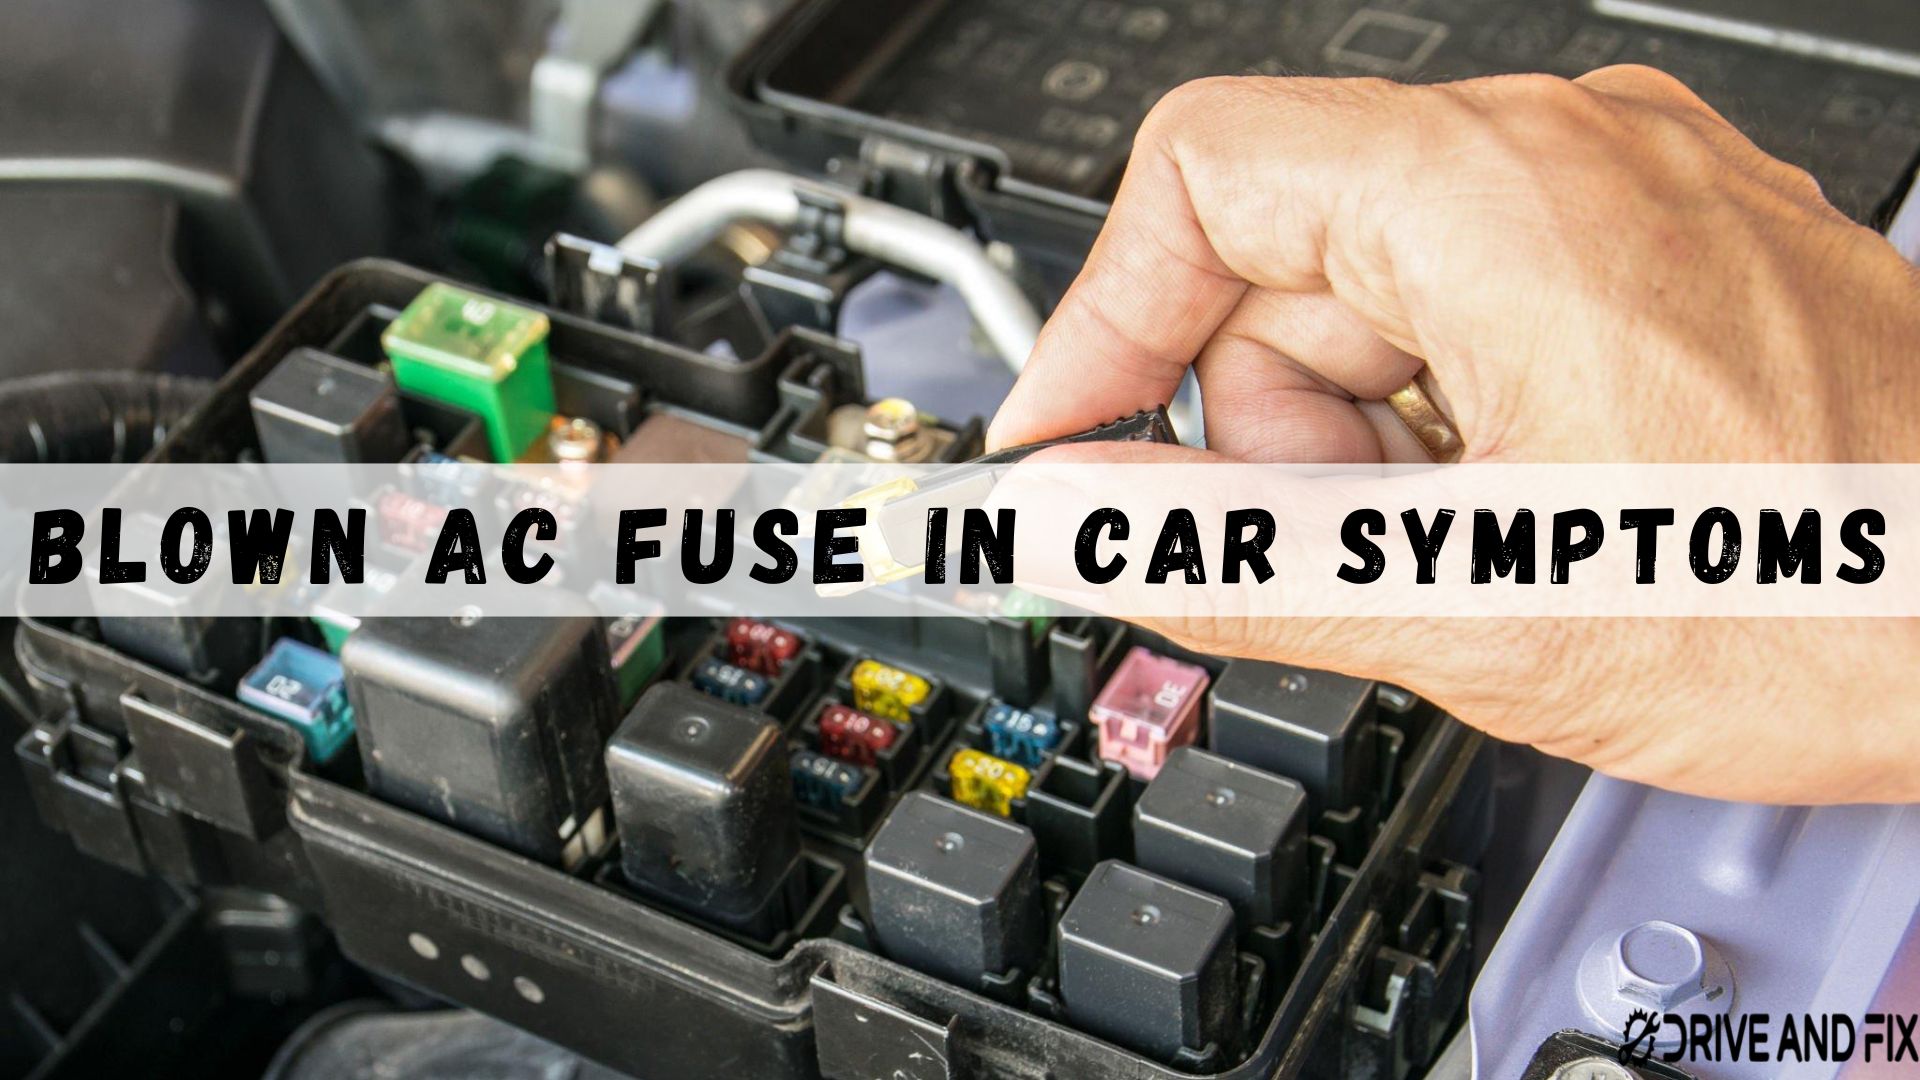 Blown AC Fuse In Car Symptoms